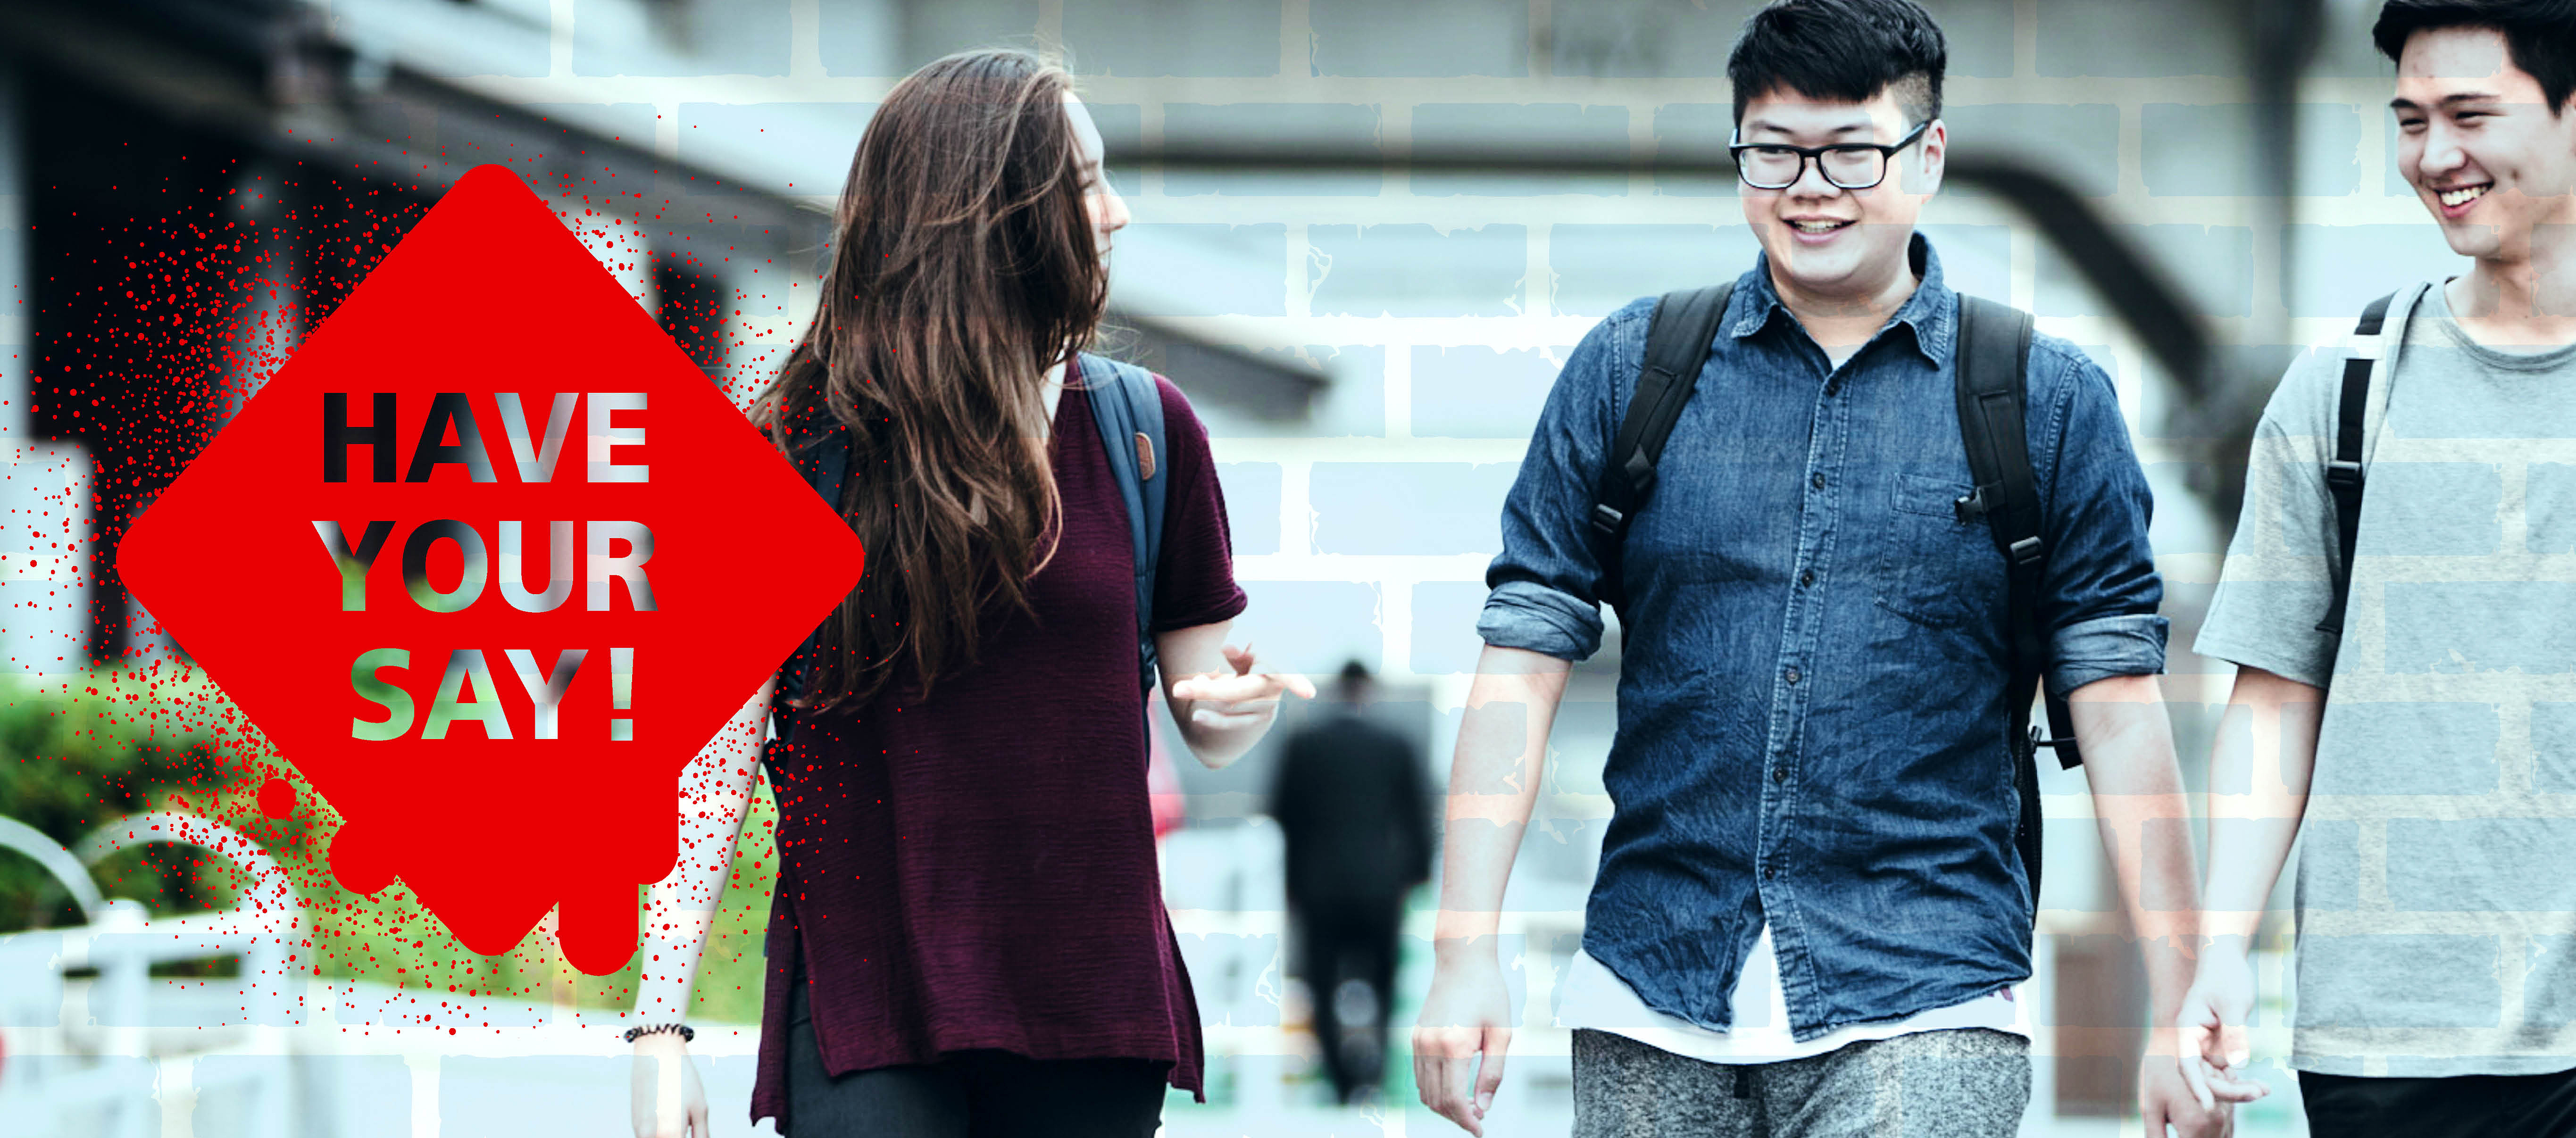 Zwei junge Personen laufen von einem Gebäude weg und unterhalten sich. Links das rote Logo "Have your say!"